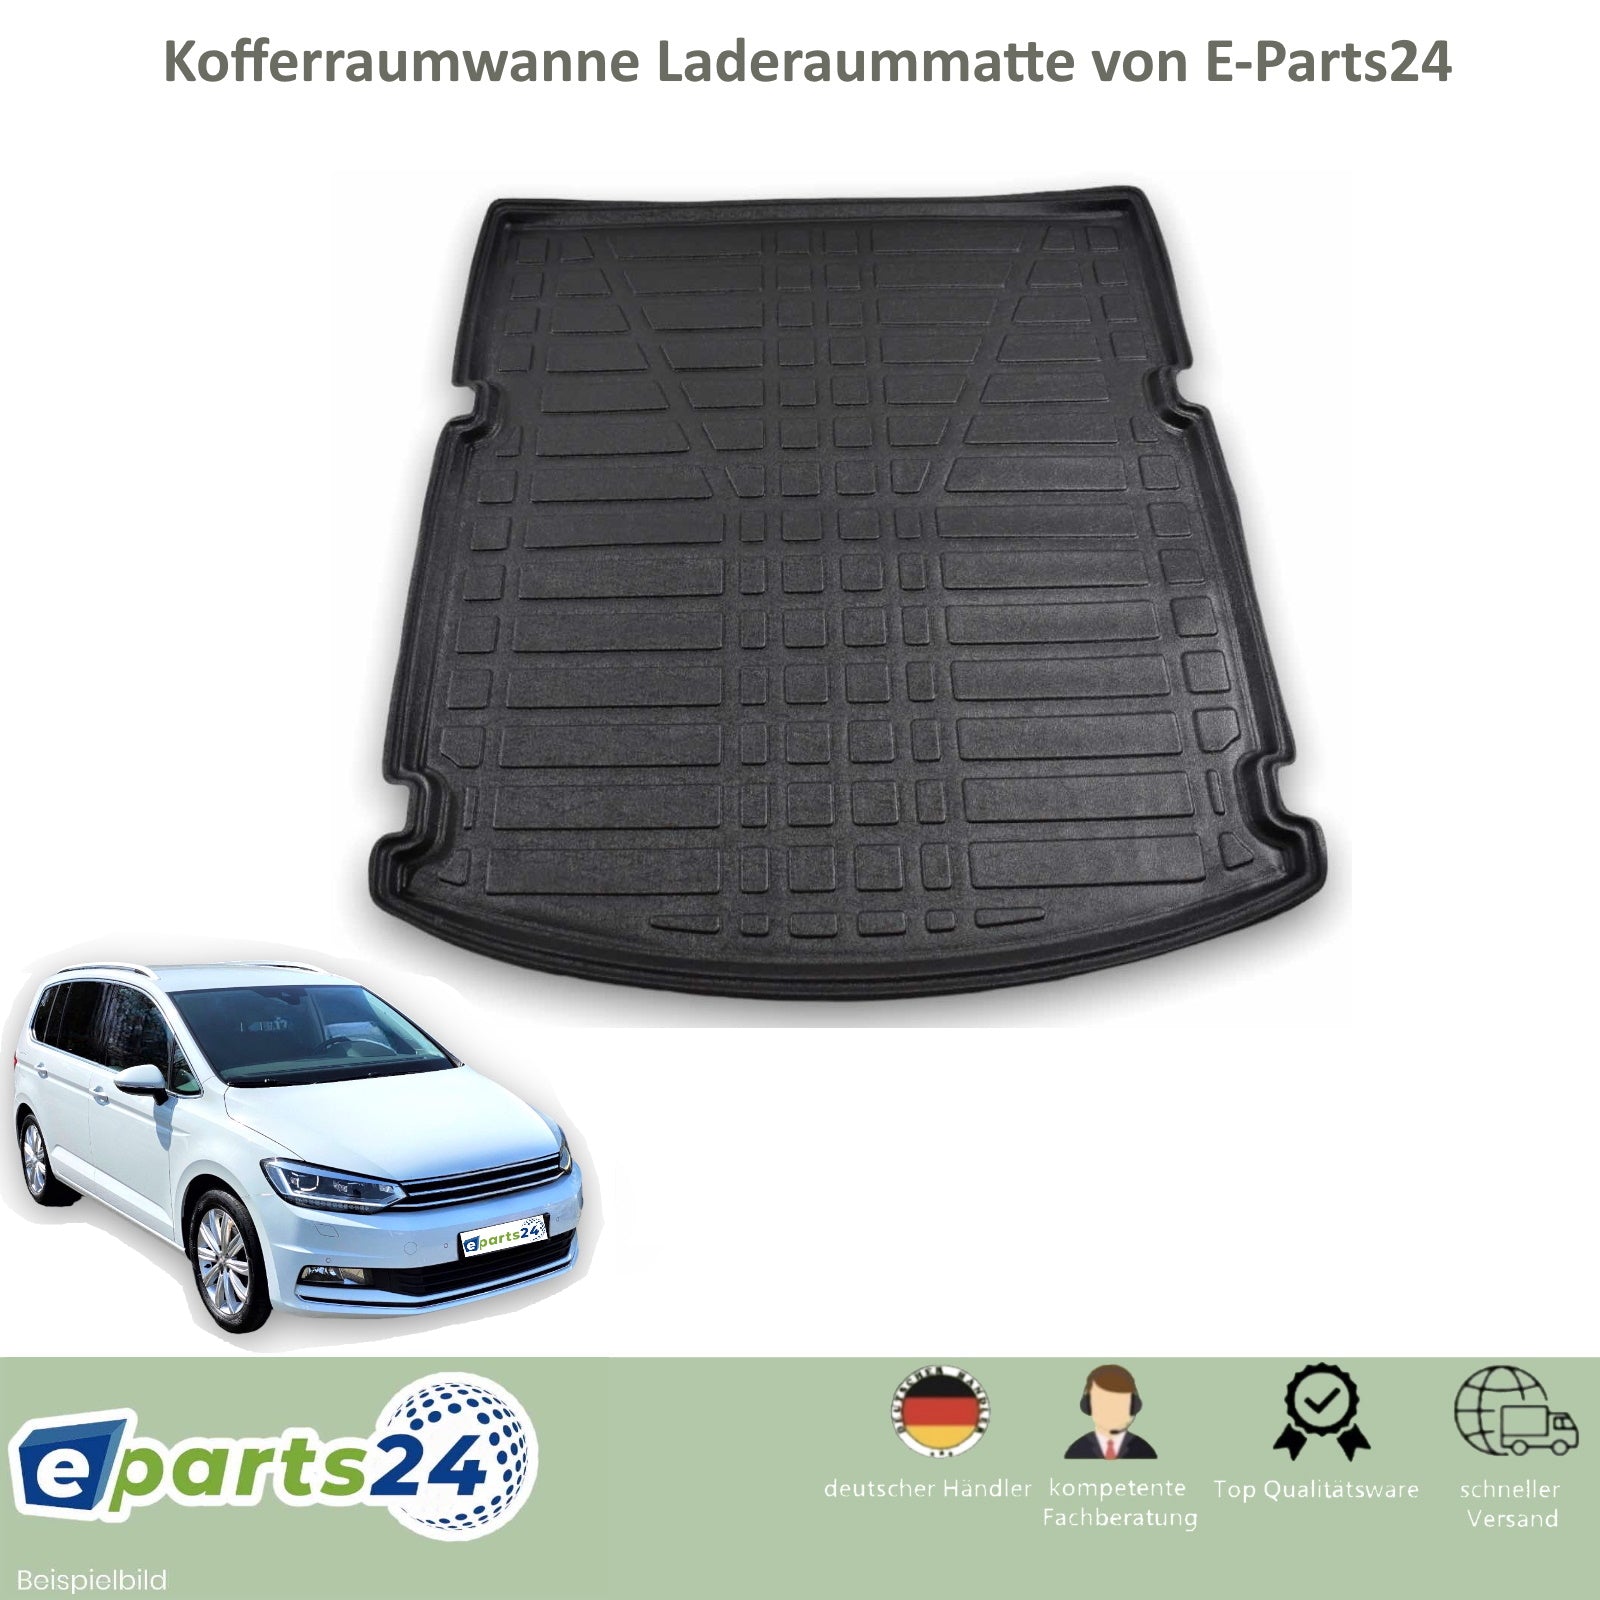 Gummi Kofferraumwanne Kofferraummatte Laderaumwanne für VW Touran 2 MK –  E-Parts24